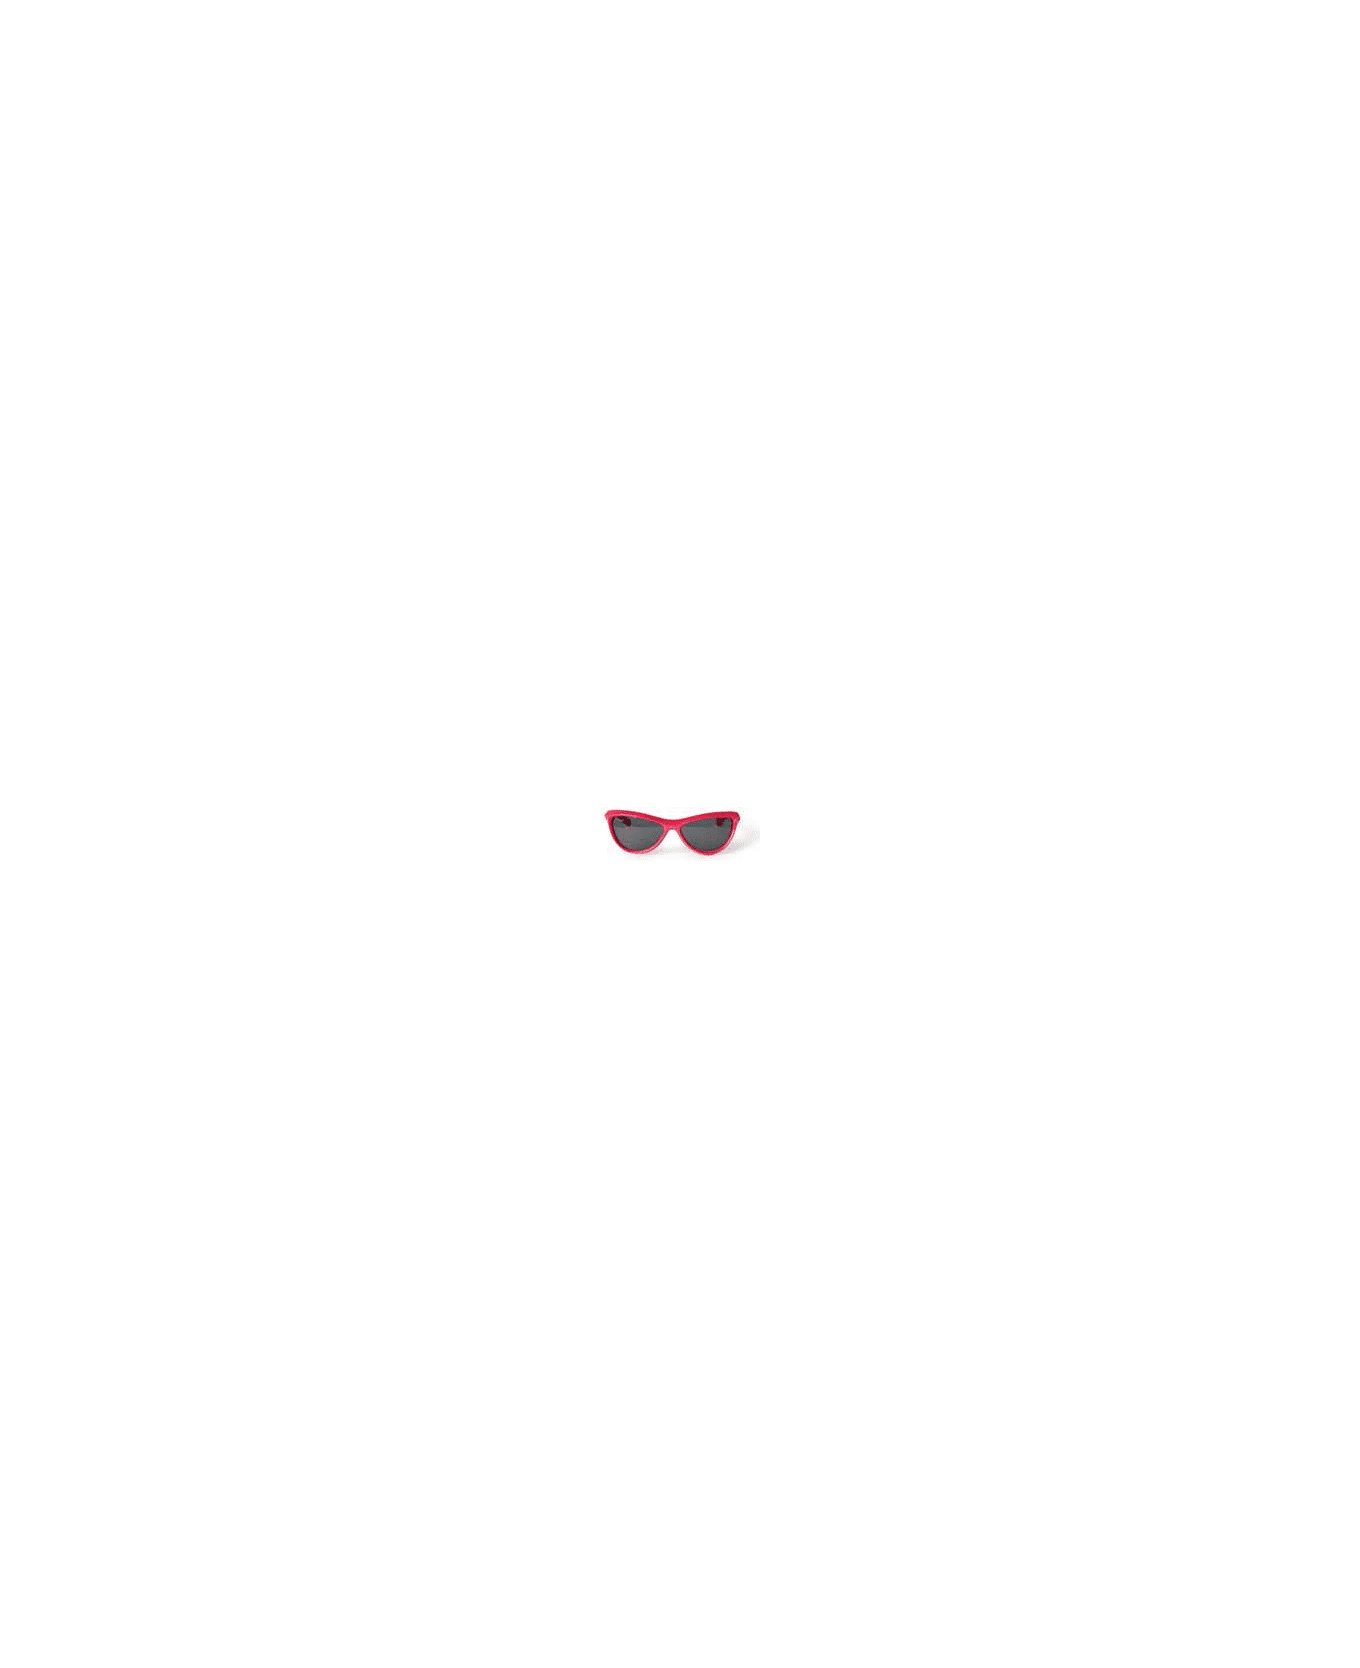 Off-White ATLANTA SUNGLASSES Sunglasses - Cherry